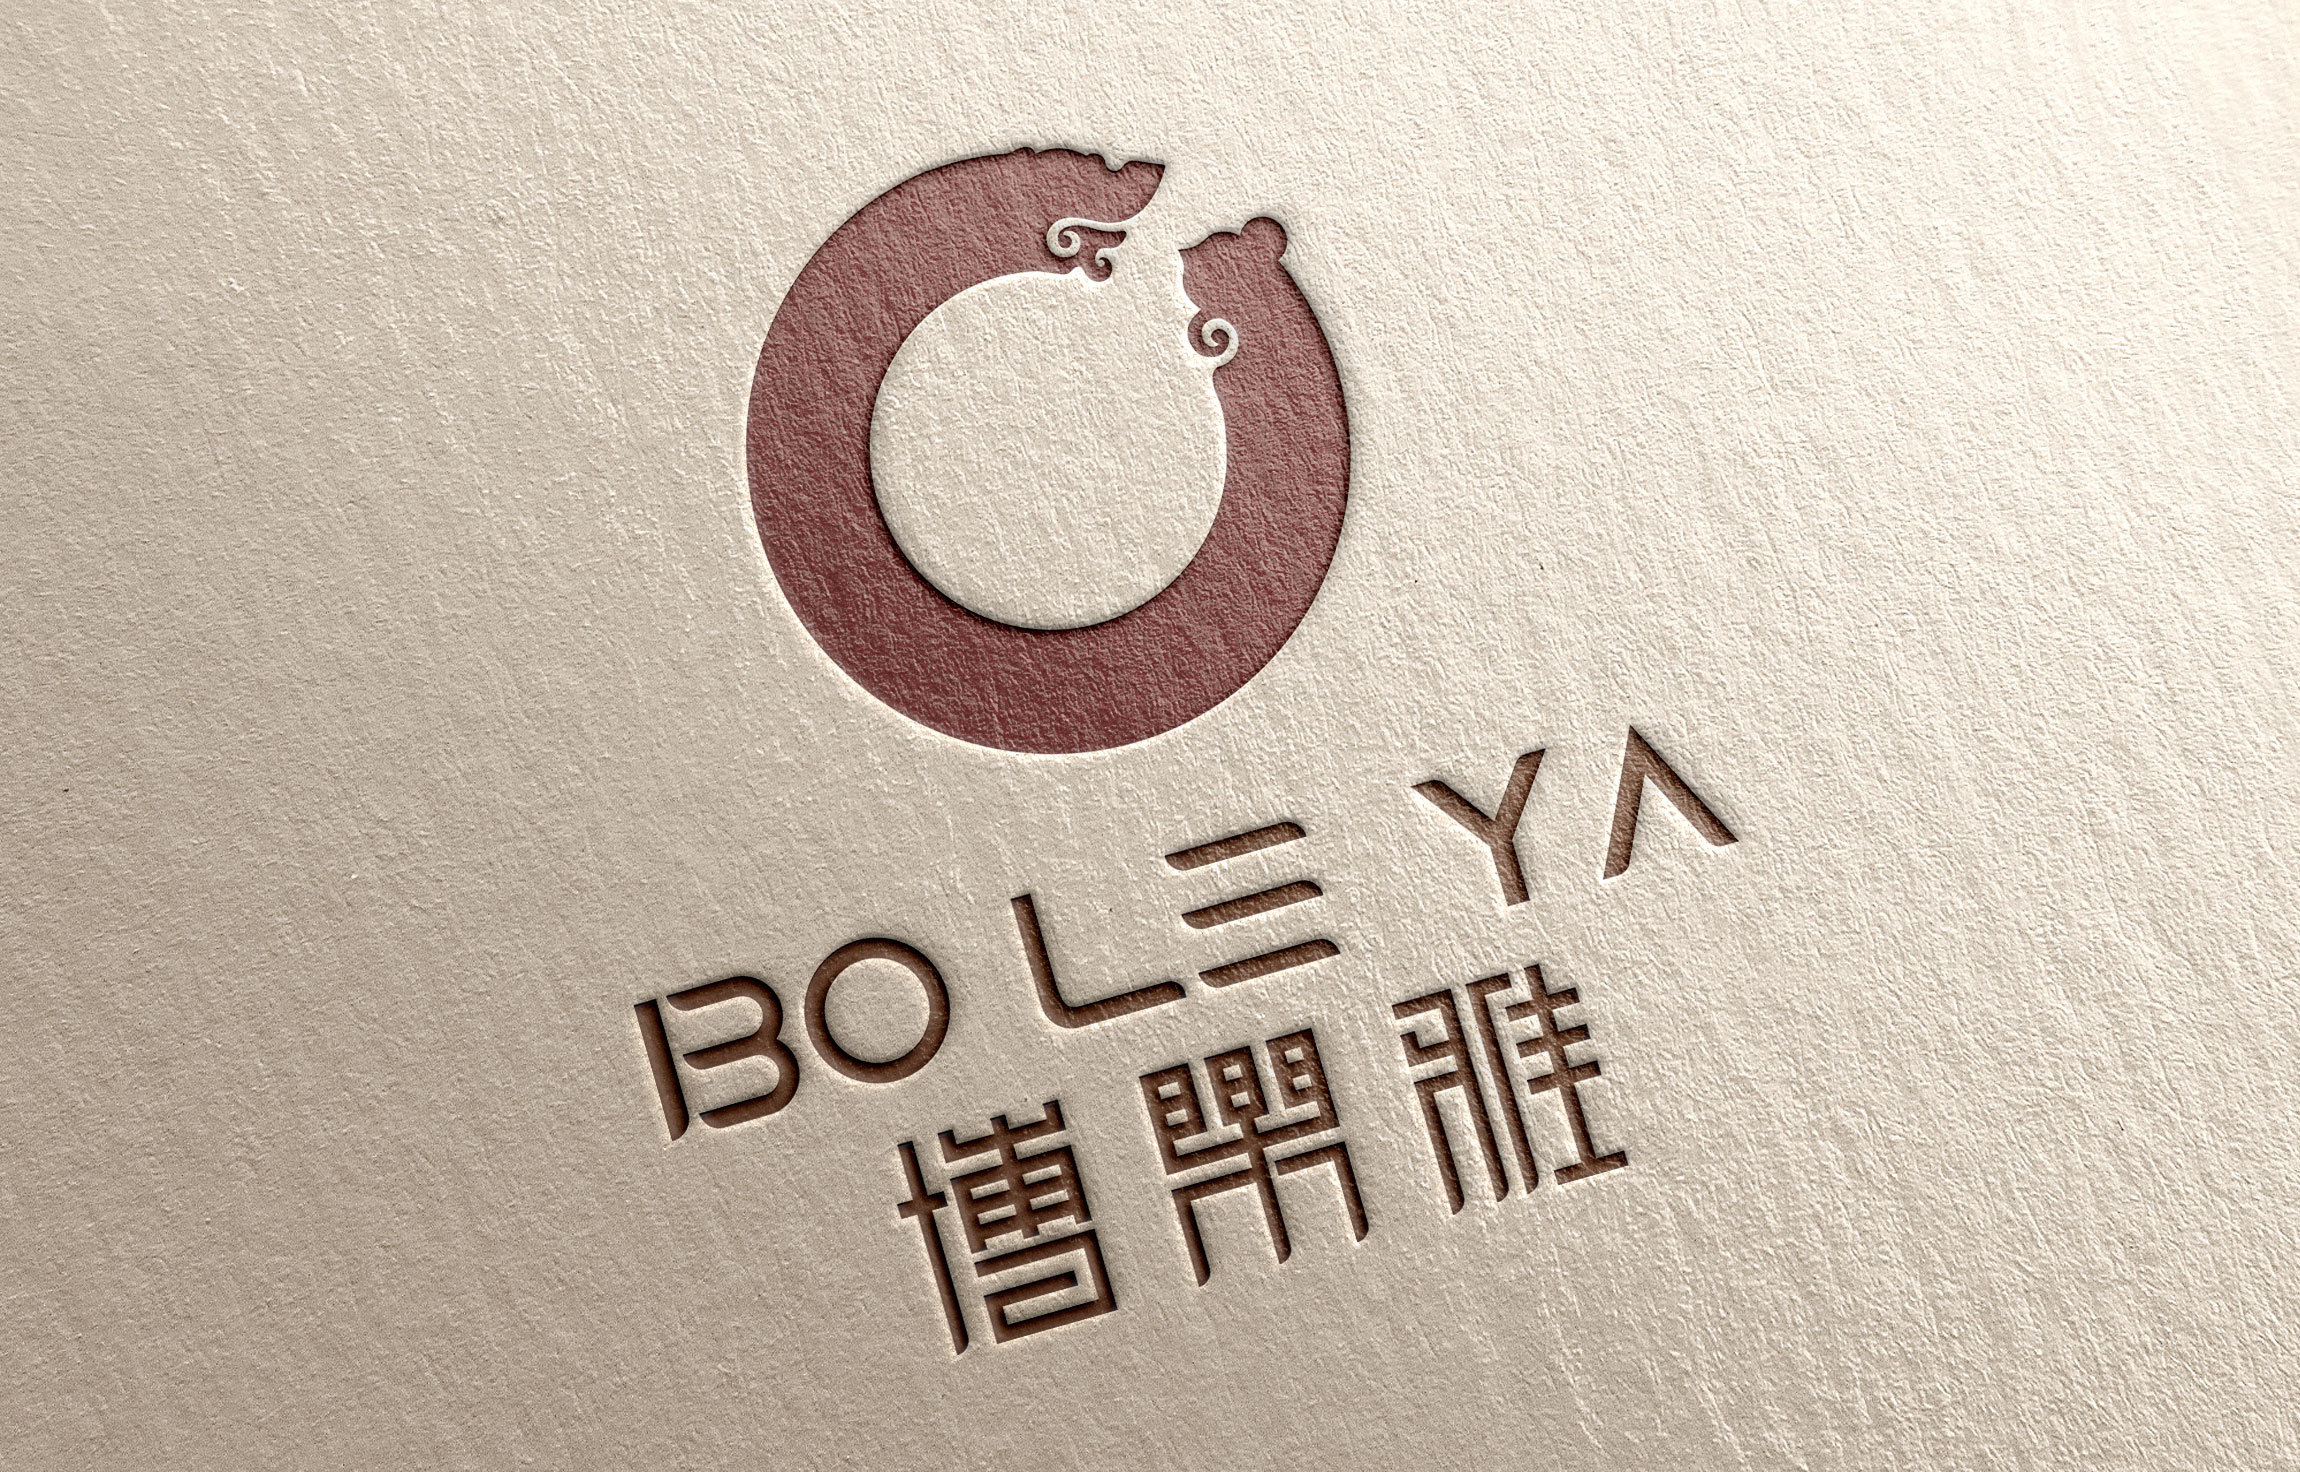 画廊logo设计图片